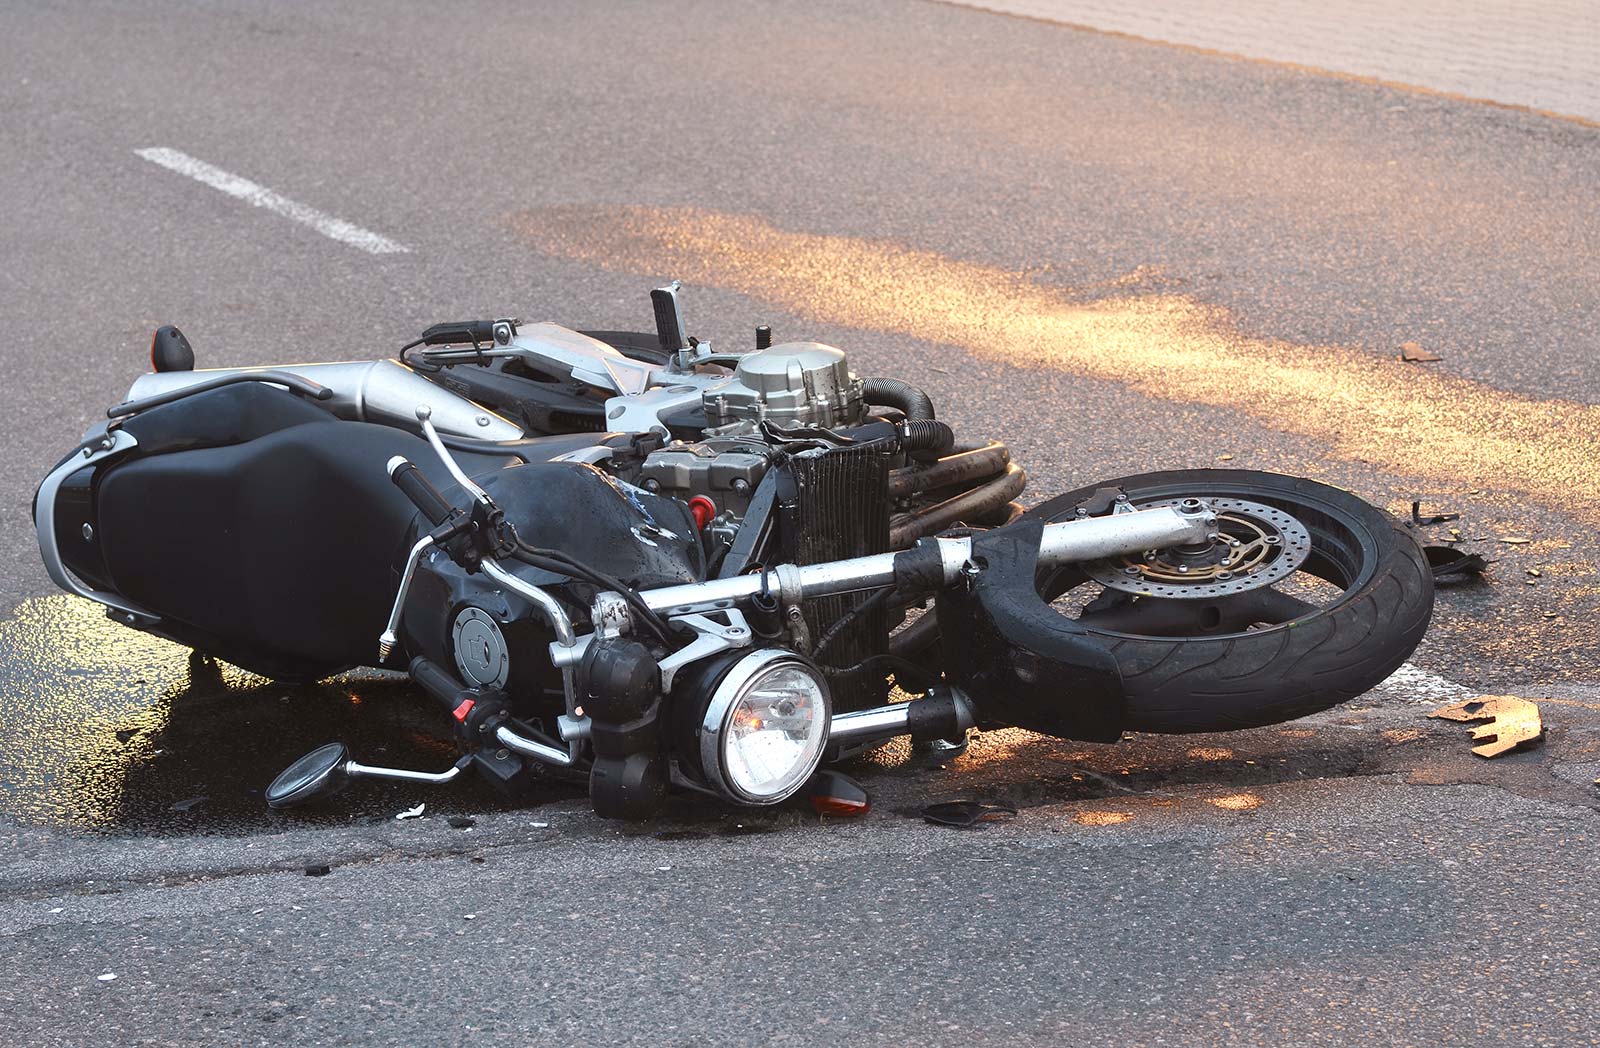 Nutzungsausfallentschädigung beschädigtes Motorrad